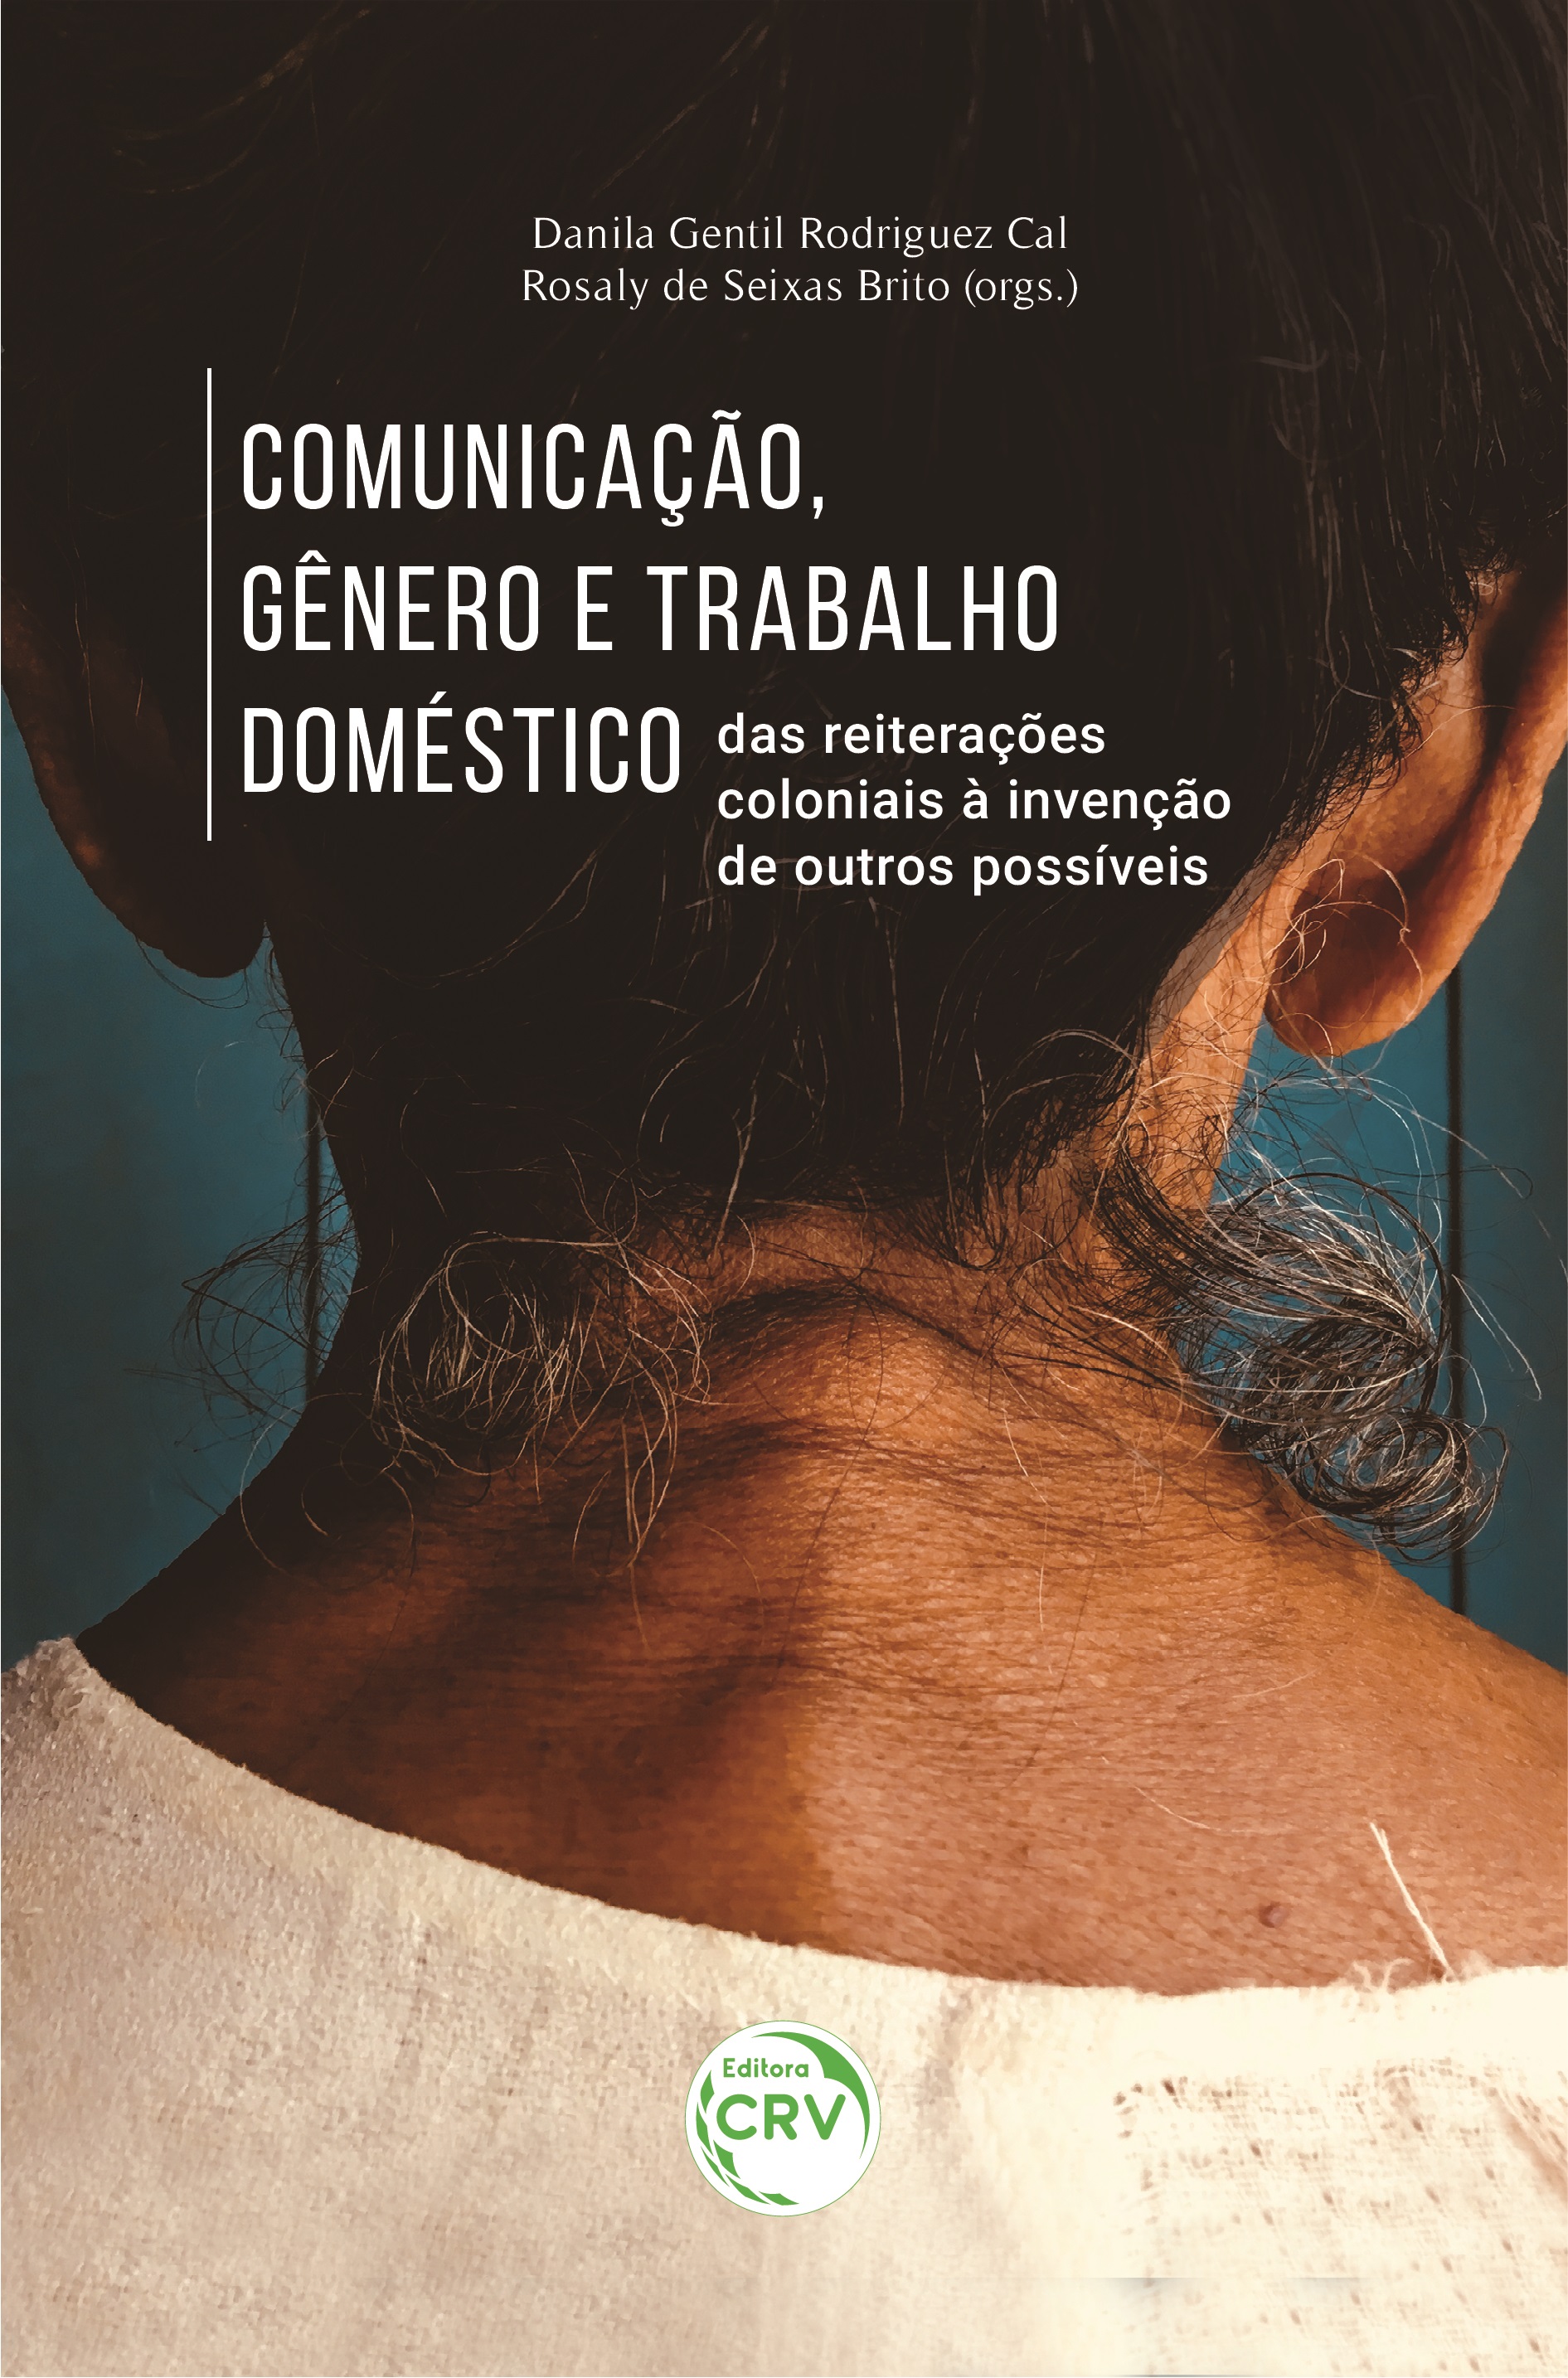 Portada del libro “Comunicación, género y trabajo doméstico”. Fuente: https://www.editoracrv.com.br/produtos/detalhes/35631-crv